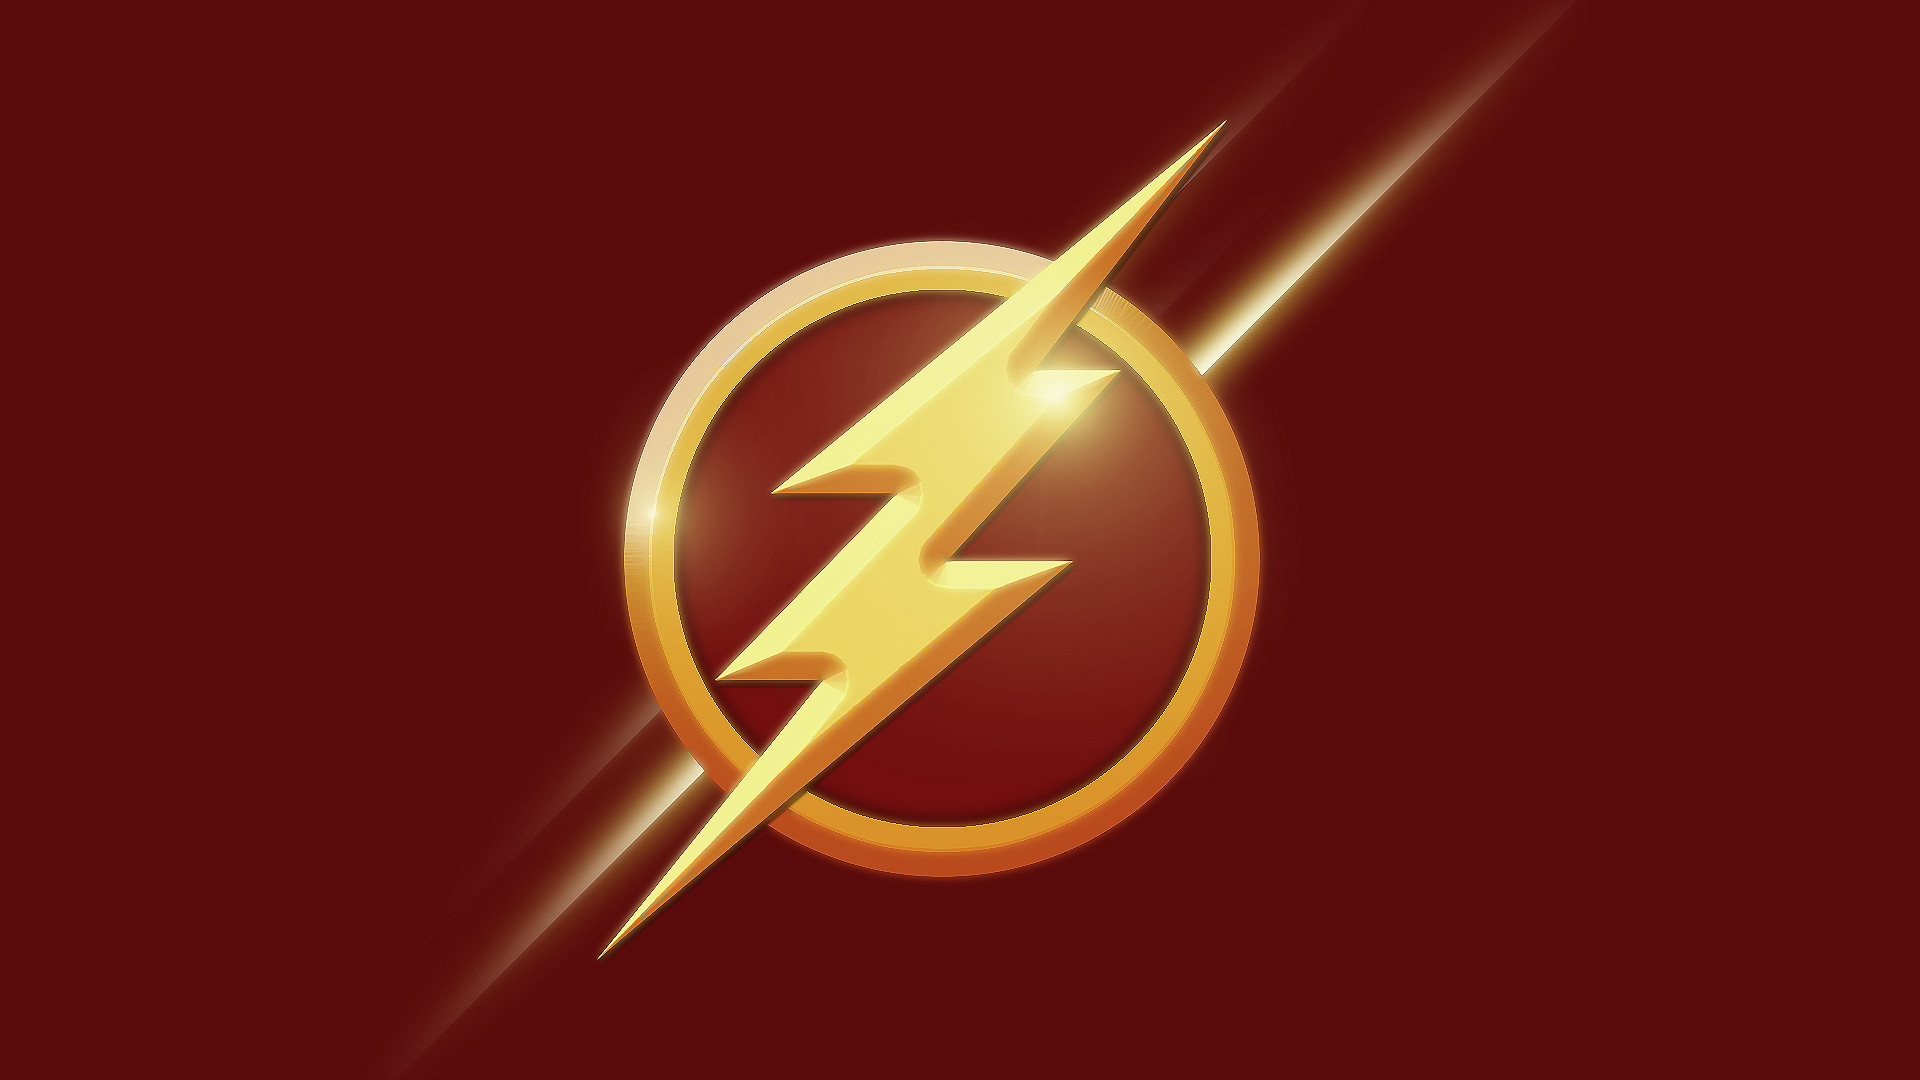 Flash Logo Minimalism Ad Wallpaper  720x1480